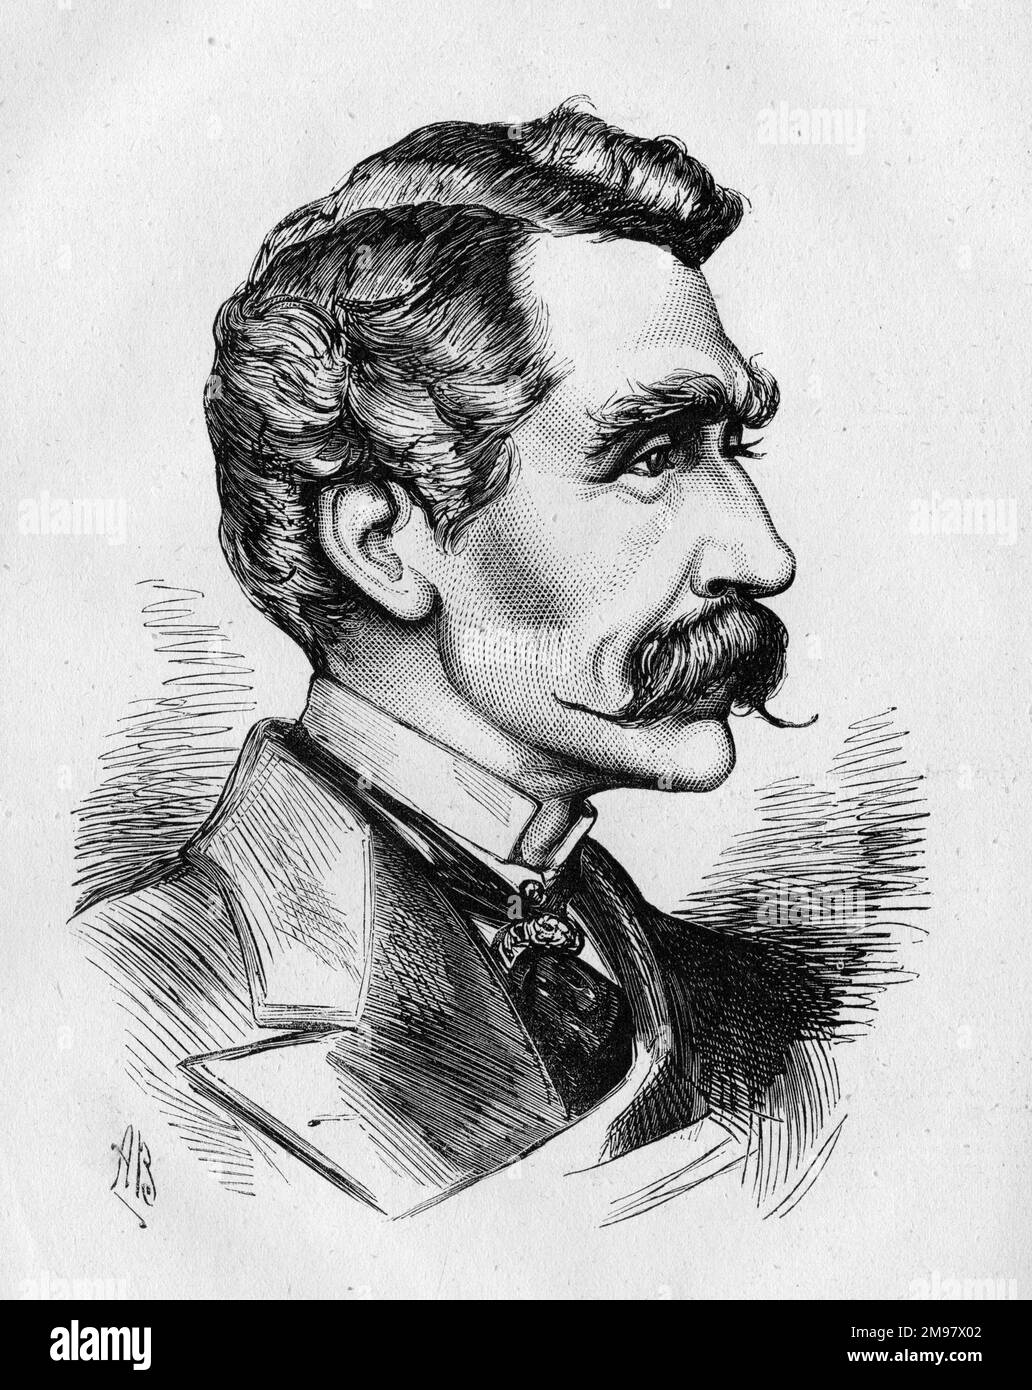 Retrato de Edward Askew Sothern (1826-1881), actor inglés conocido por sus papeles cómicos en el Reino Unido y América. Su parte más famosa fue Lord Dundreary en nuestro primo americano. Foto de stock